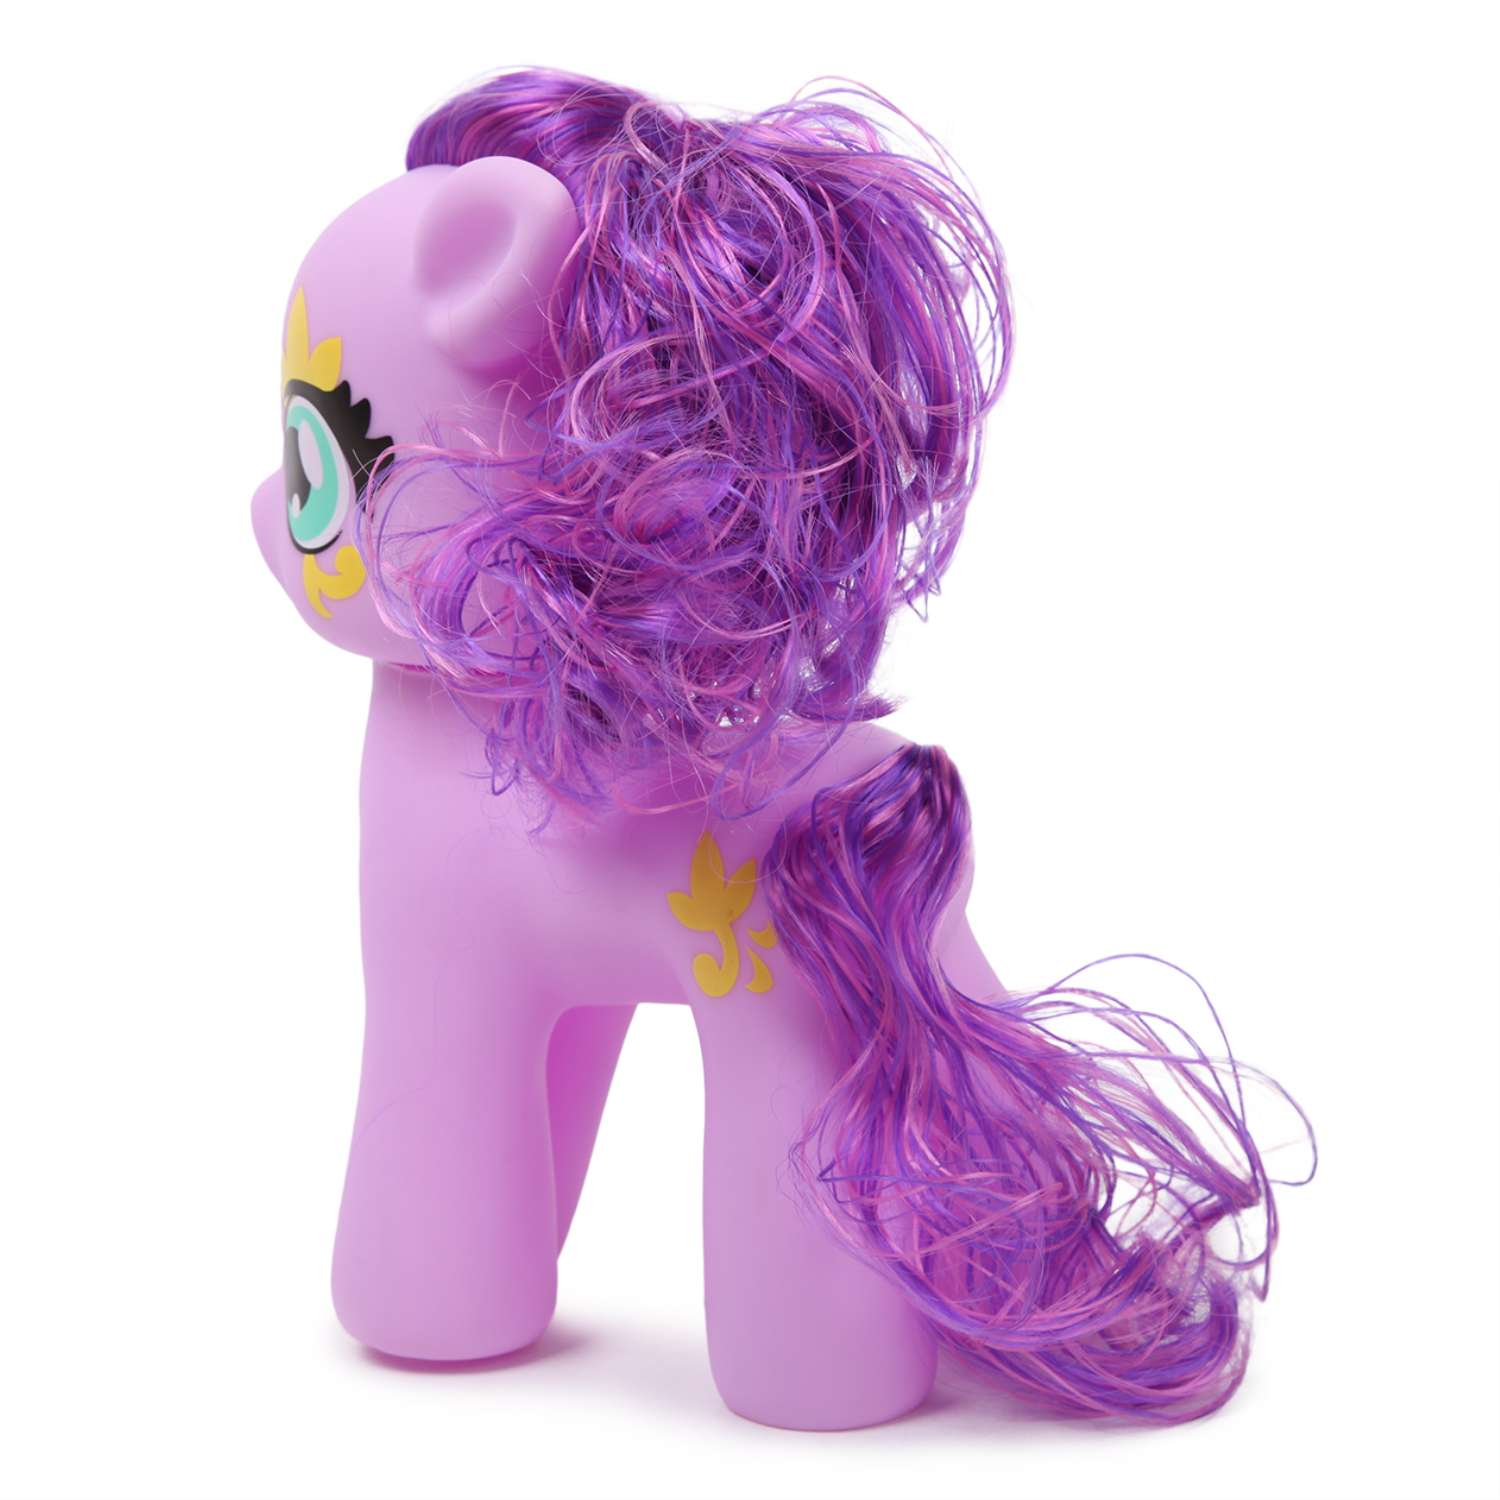 Star pony. Demi Star пони фиолетовый. Набор пони Demi Star. Фиолетовая пони игрушка. Игрушка с фиолетовыми волосами.